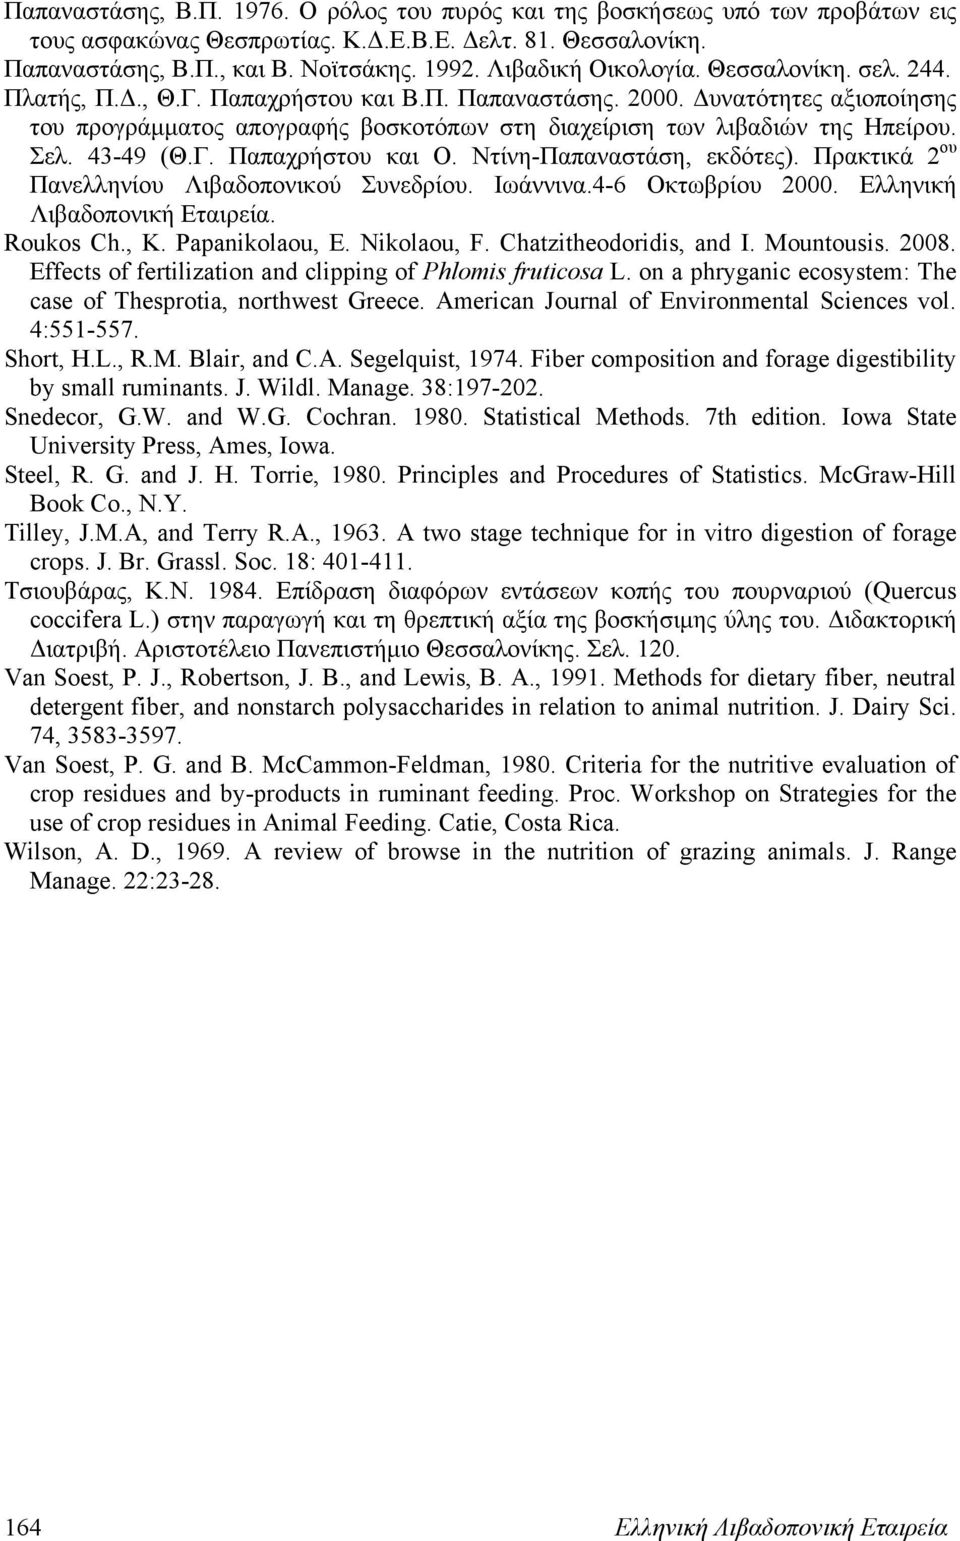 Δυνατότητες αξιοποίησης του προγράμματος απογραφής βοσκοτόπων στη διαχείριση των λιβαδιών της Ηπείρου. Σελ. 43-49 (Θ.Γ. Παπαχρήστου και Ο. Ντίνη-Παπαναστάση, εκδότες).